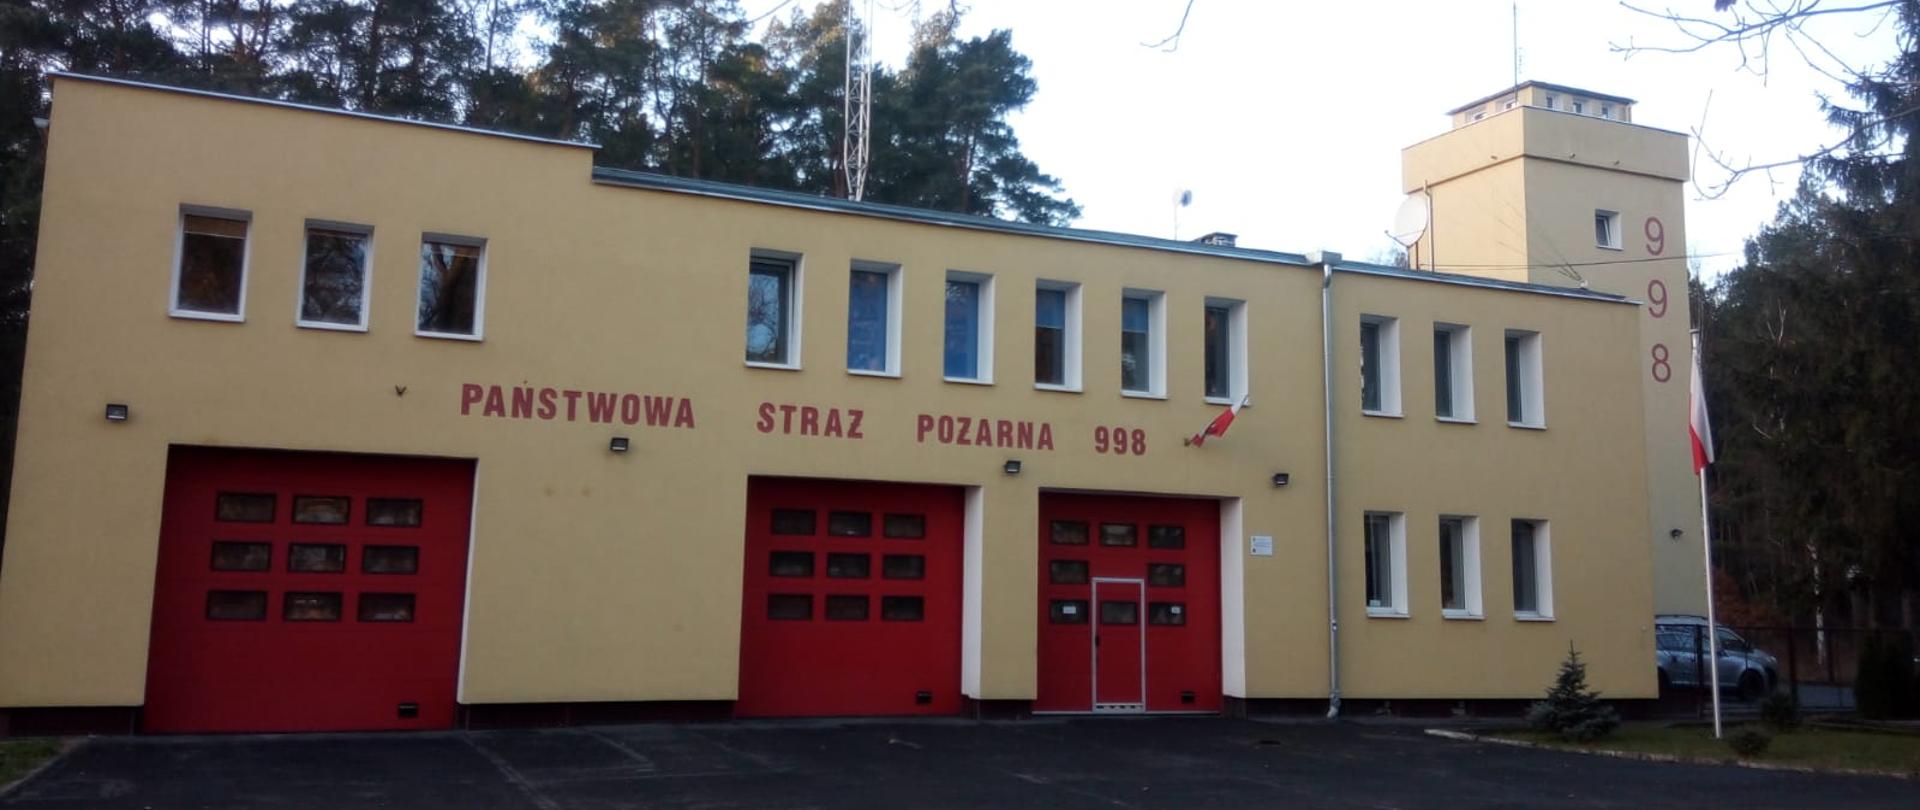 Budynek Jednostki Ratowniczo-Gaśniczej nr 4 w Bydgoszczy, elewacja frontowa.